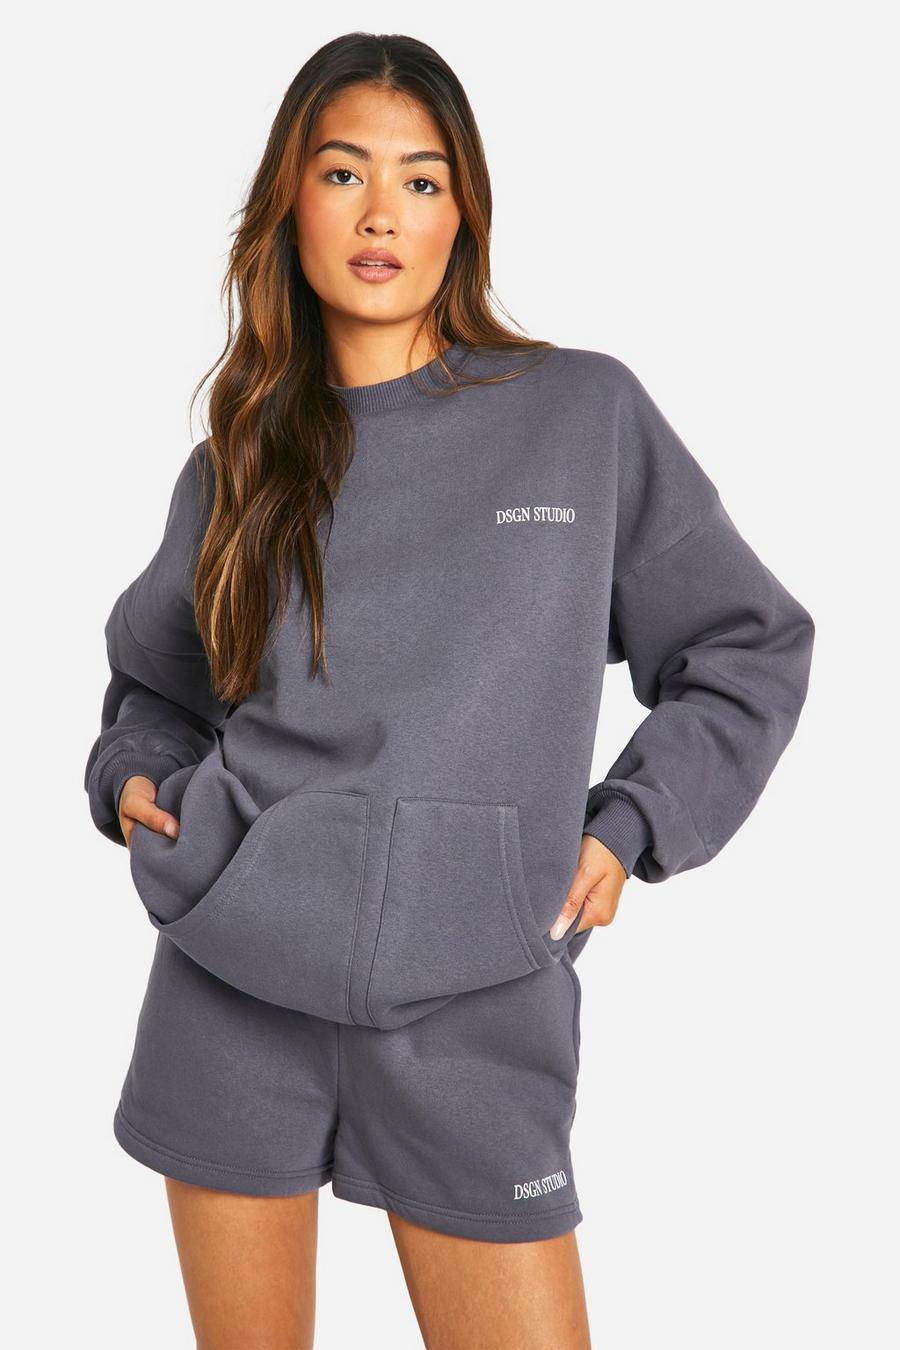 Kurzer Sweatshirt-Trainingsanzug mit Dsgn Studio Slogan und Taschen-Detail, Charcoal